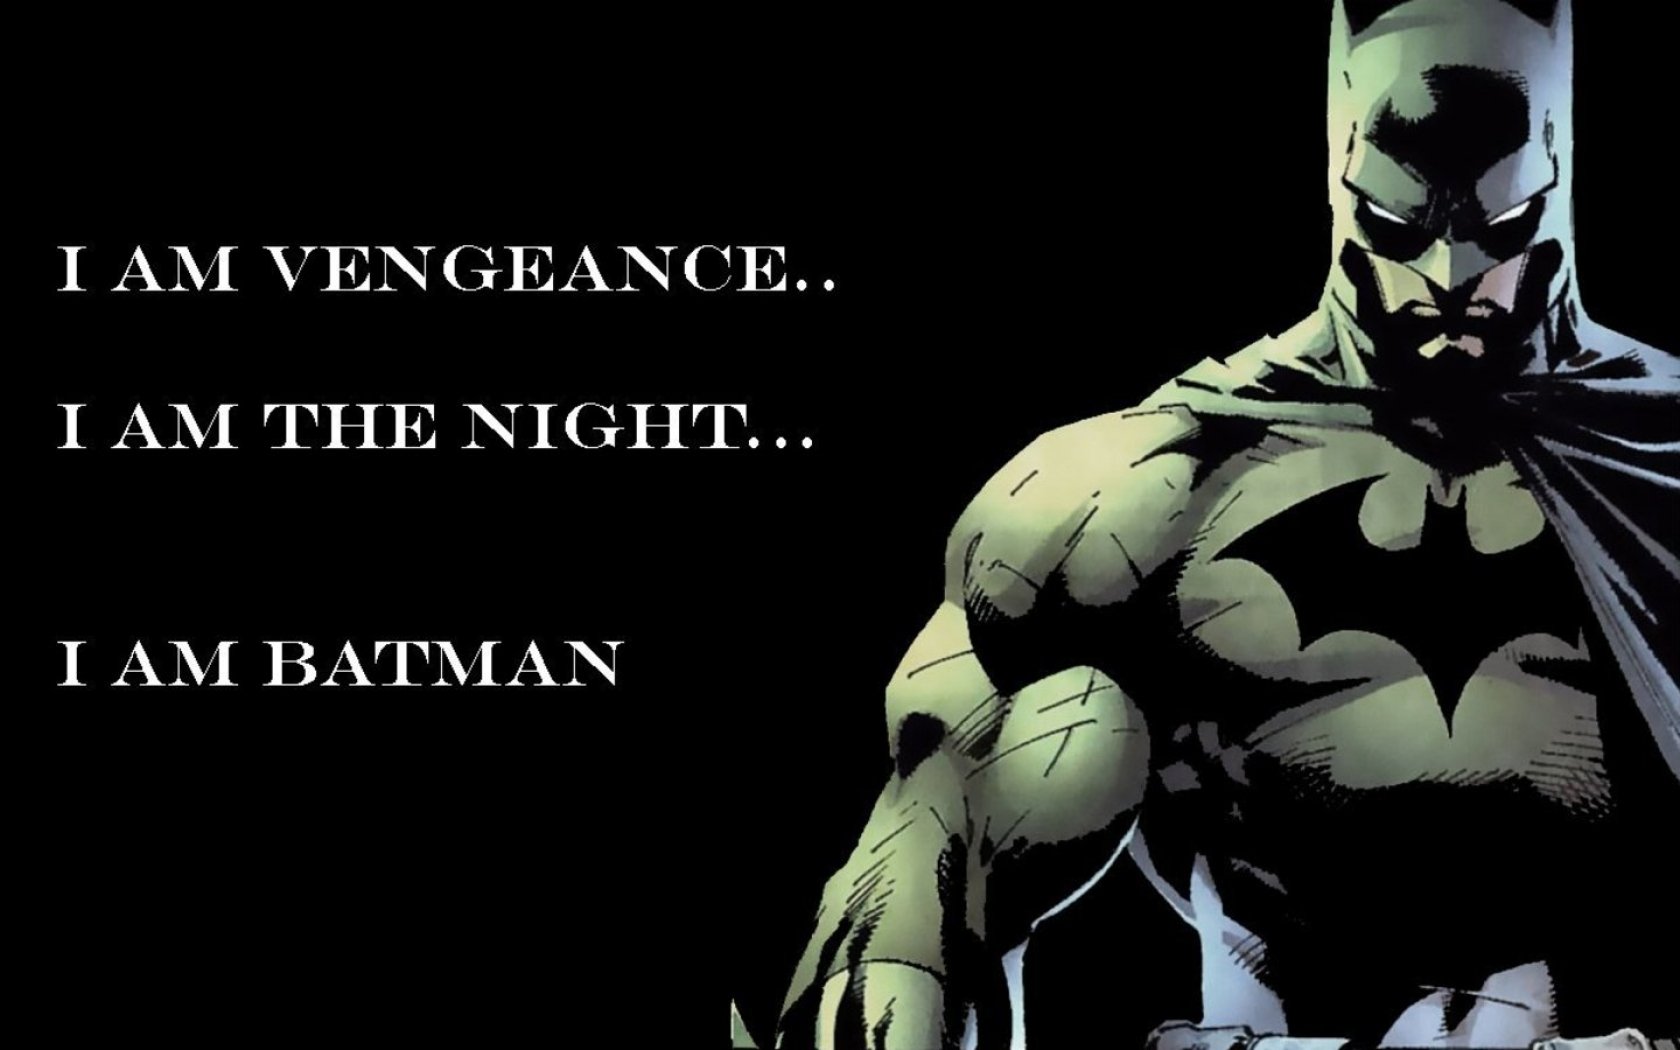 quote, comics, batman, dc comics, superhero images